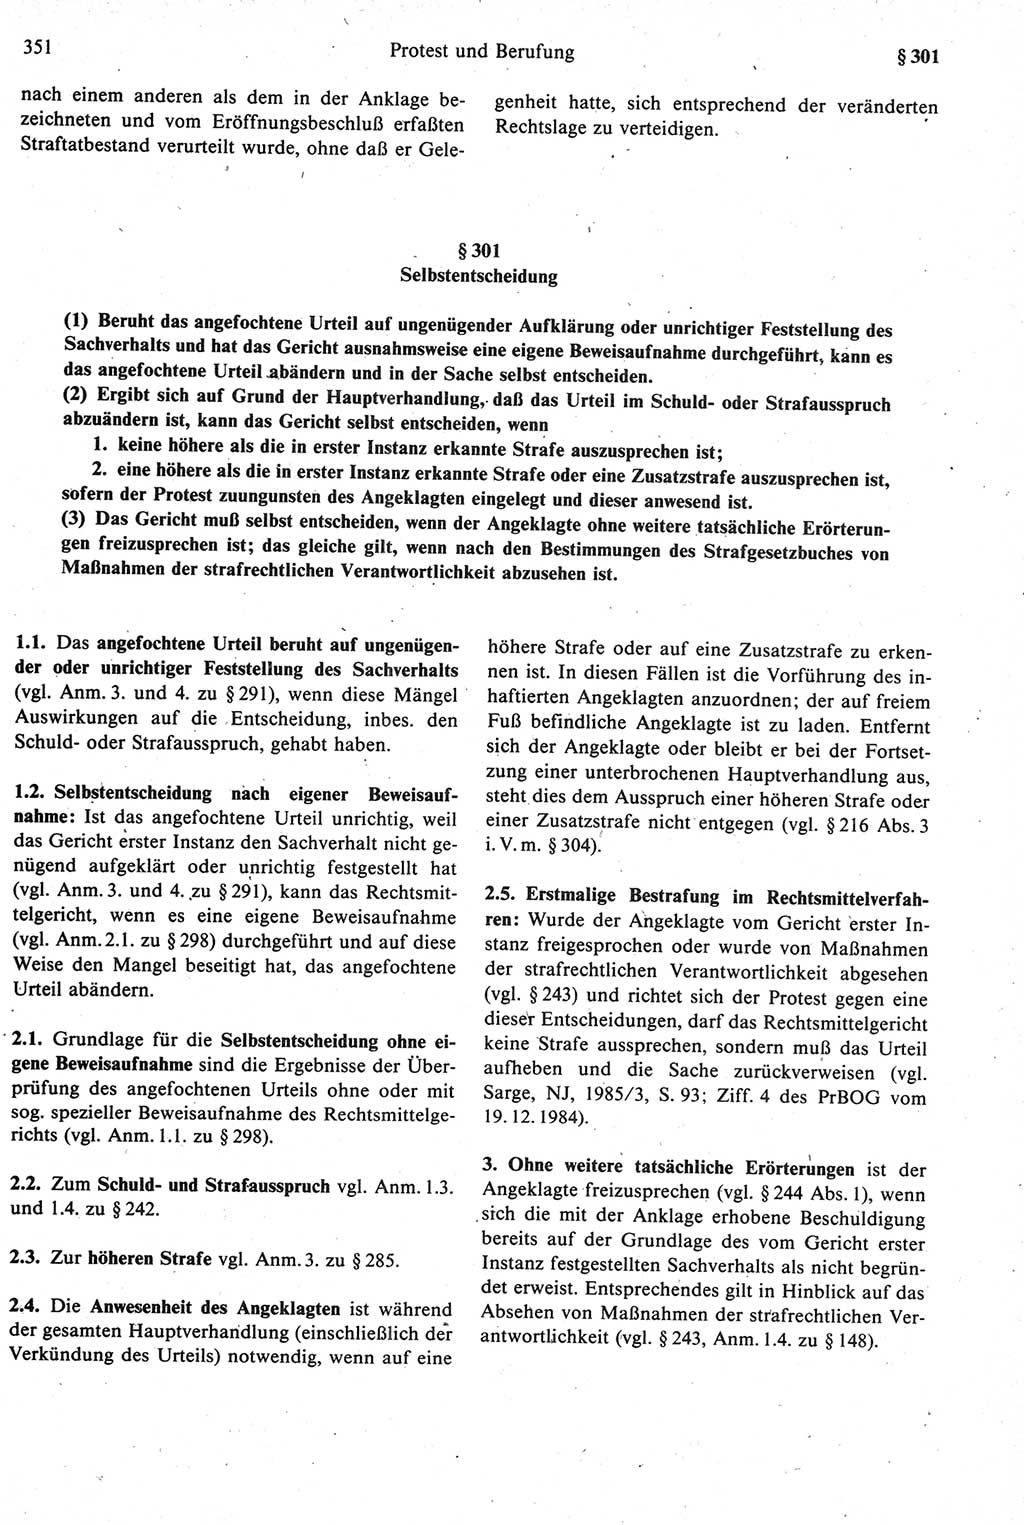 Strafprozeßrecht der DDR [Deutsche Demokratische Republik], Kommentar zur Strafprozeßordnung (StPO) 1987, Seite 351 (Strafprozeßr. DDR Komm. StPO 1987, S. 351)